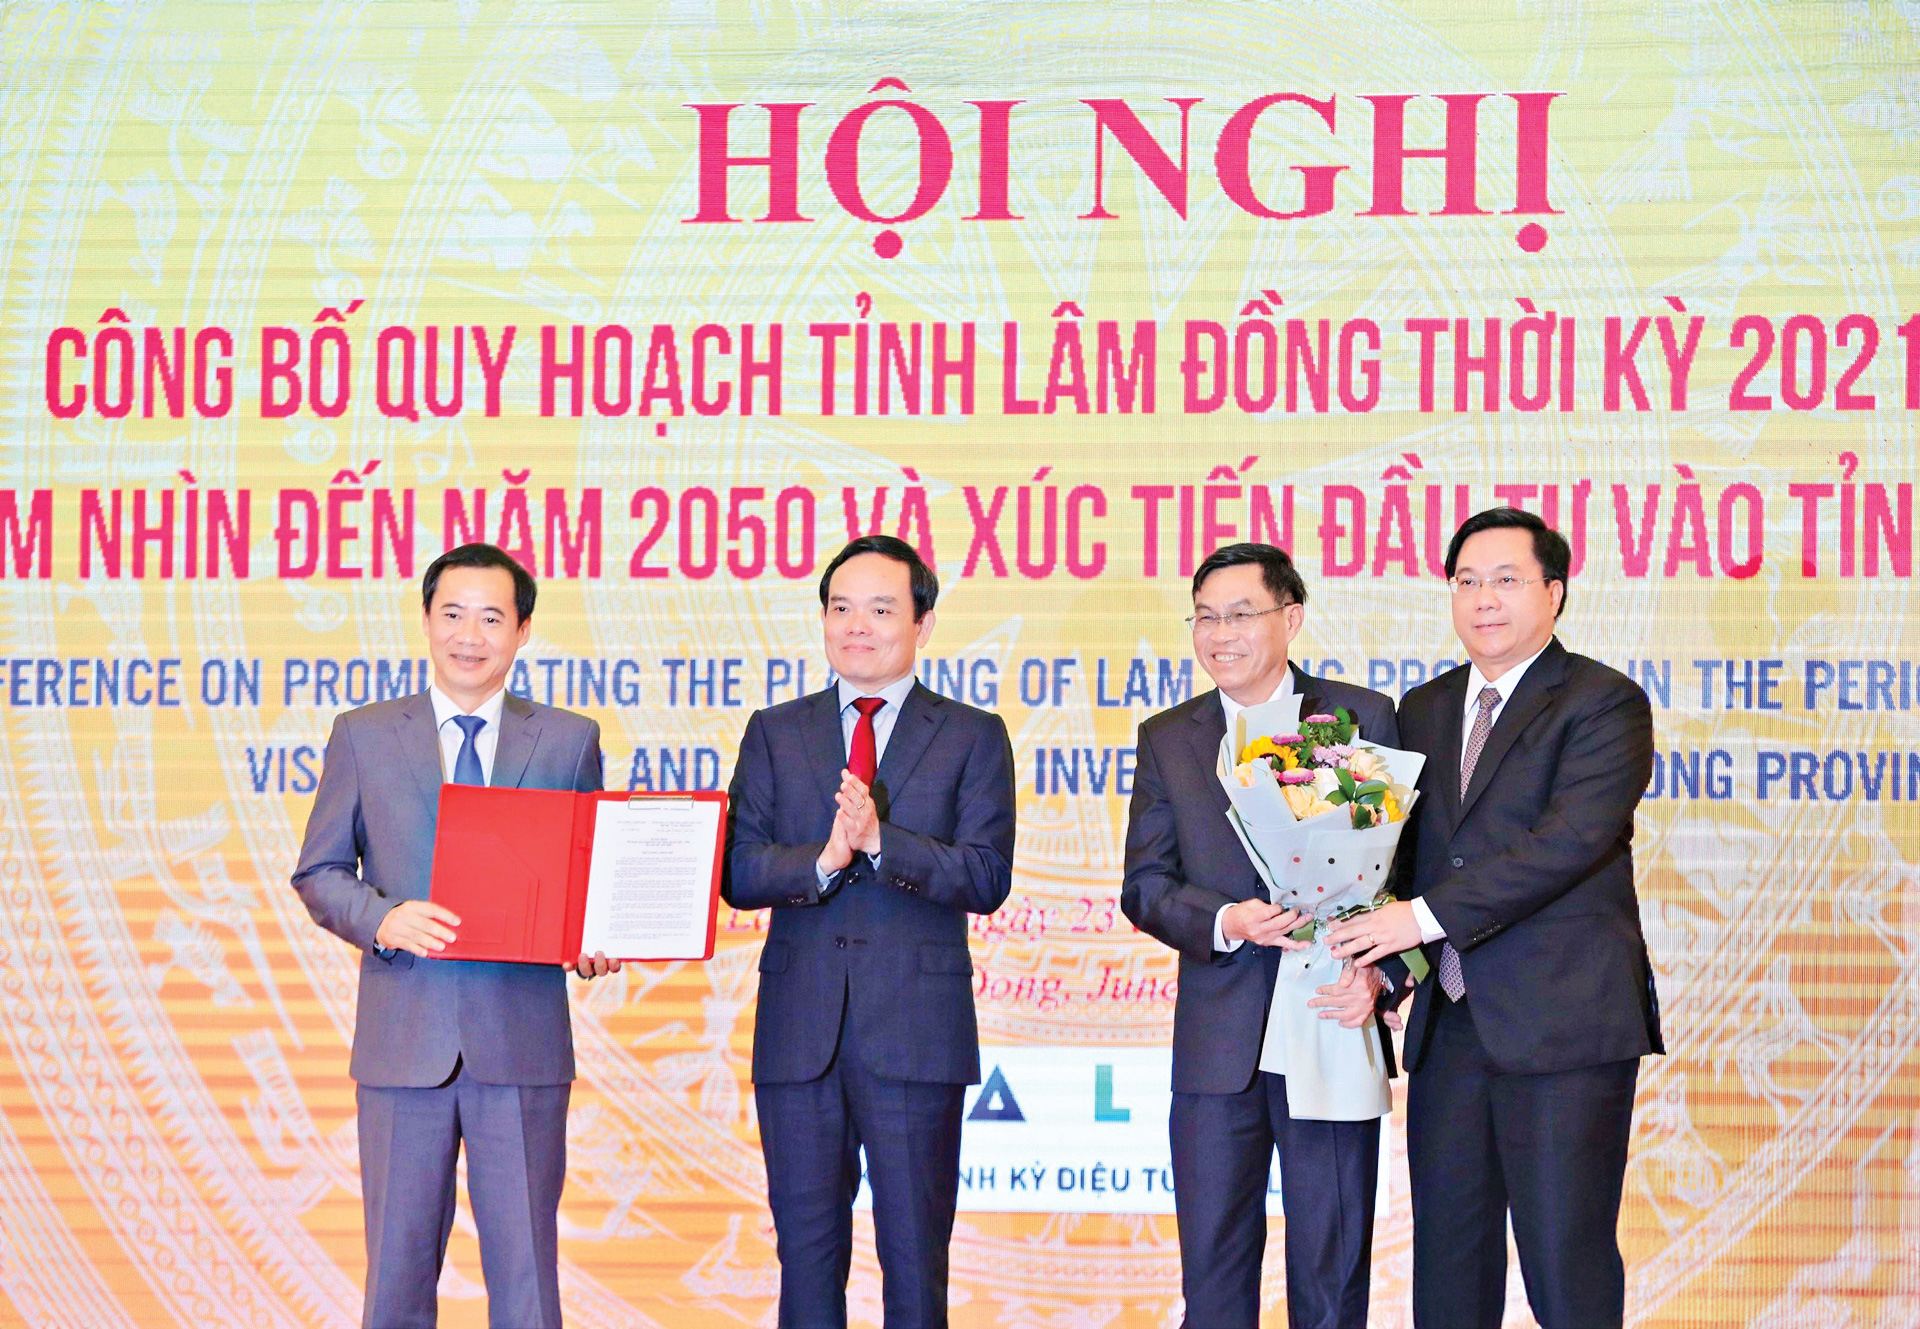 Đồng chí Trần Lưu Quang - Phó Thủ tướng Chính phủ trao quyết định quy hoạch cho lãnh đạo tỉnh Lâm Đồng